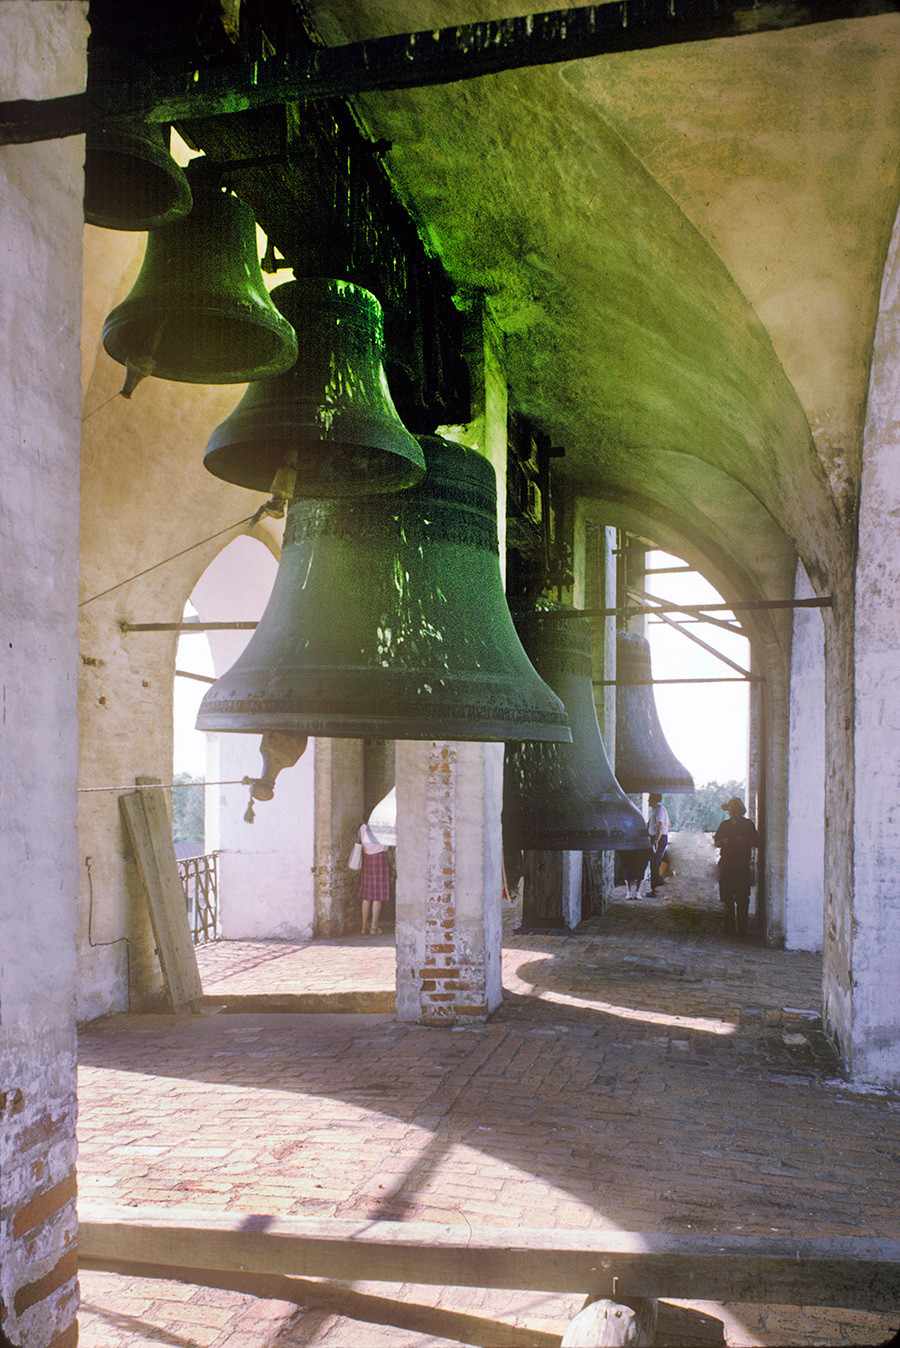 ウスペンスキー聖堂の鐘楼、上階。鐘の「白鳥」と「ポリエレオス」と「シソイ」。1995年6月28日。